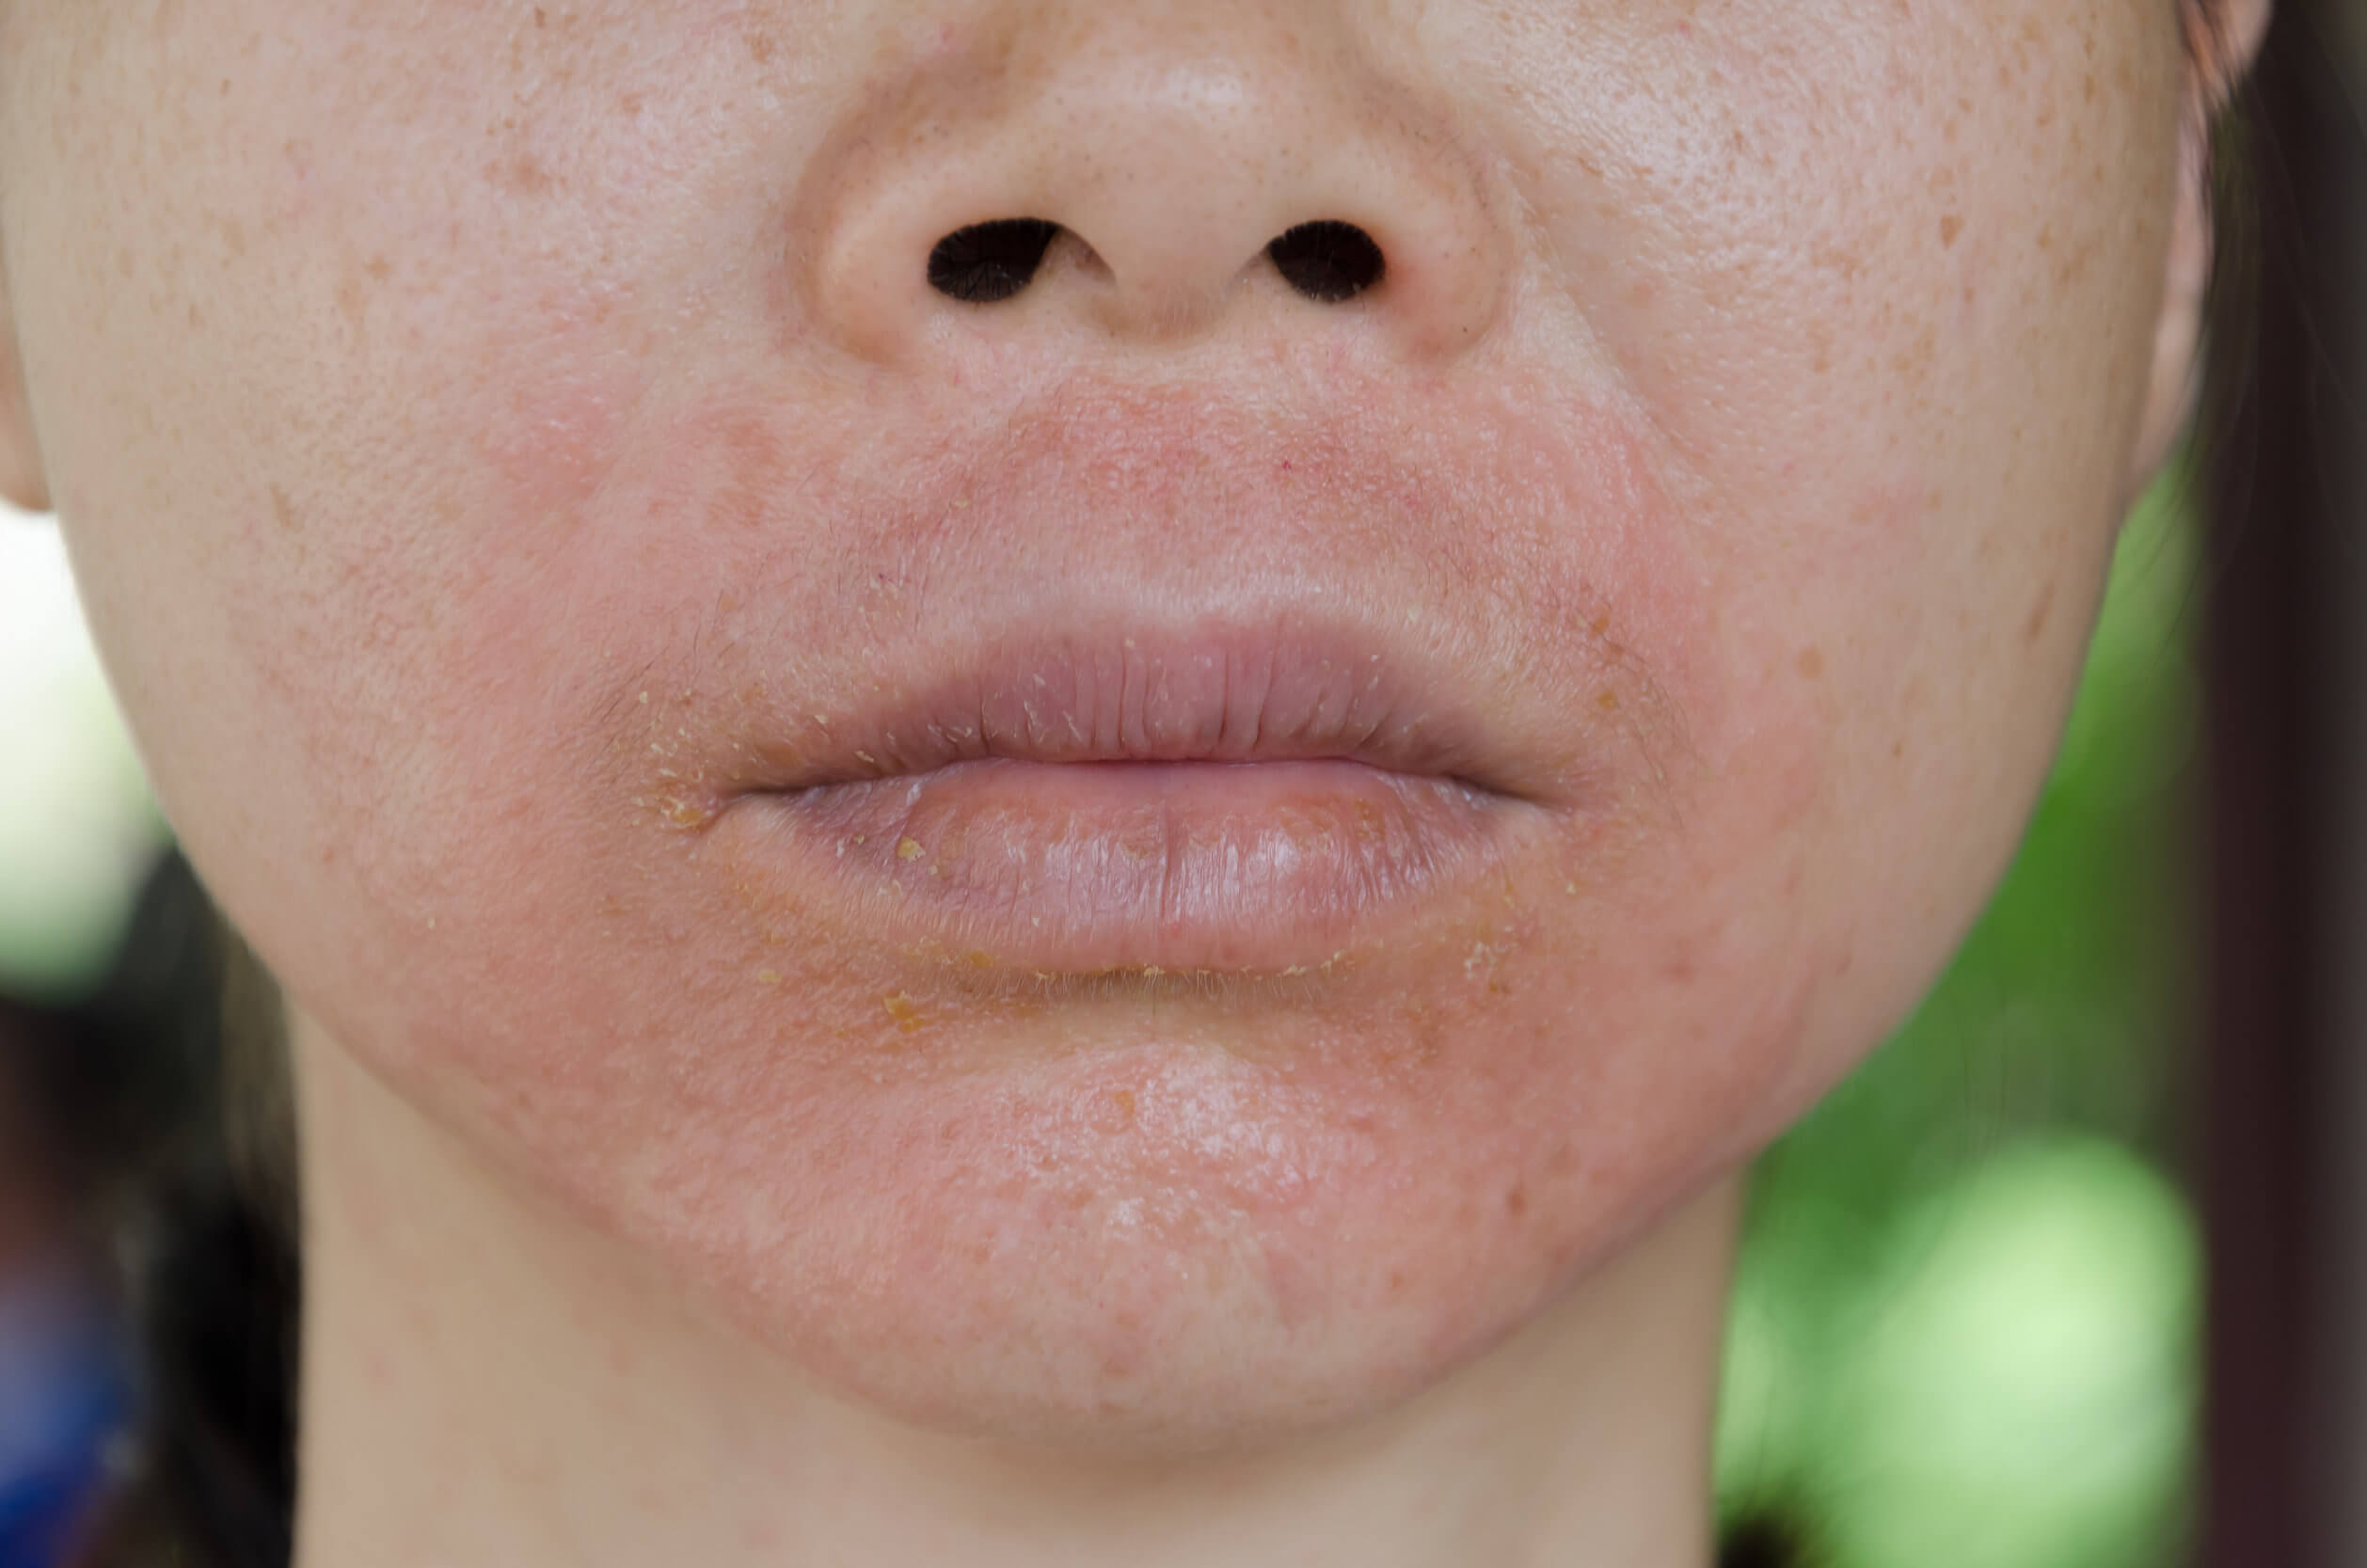 Infecções de pele: tipos, causas e tratamentos